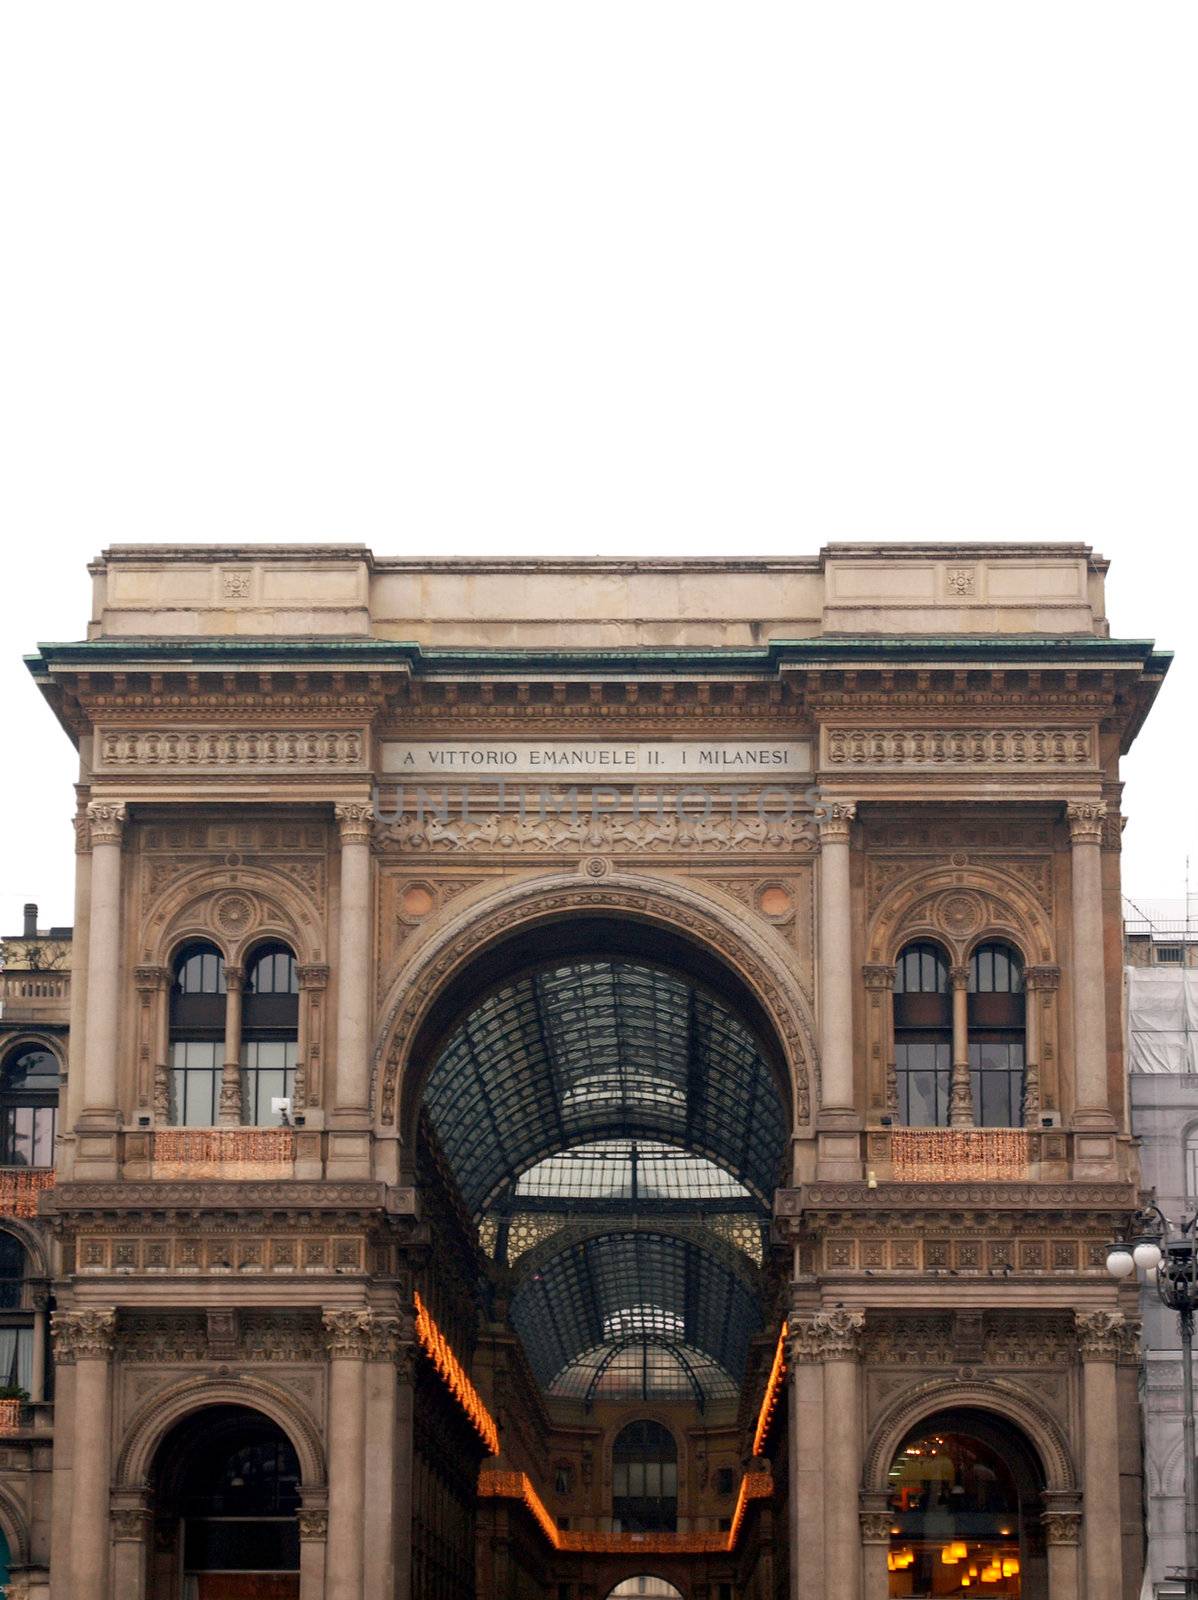 Galleria Vittorio Emanuele II, Milan by claudiodivizia